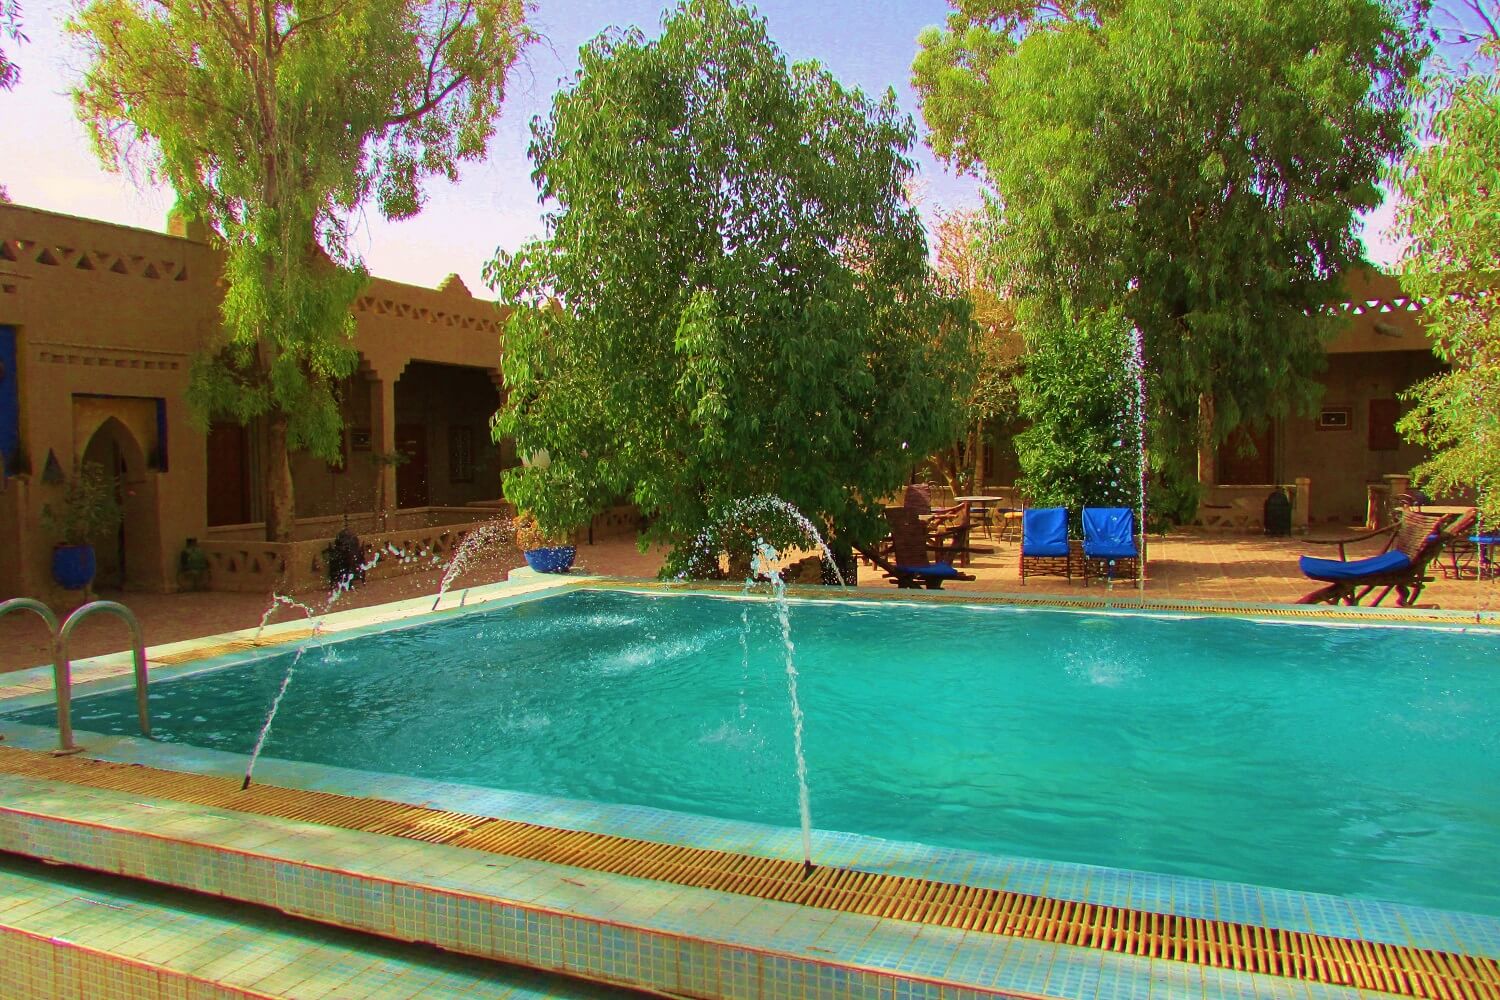 piscina do hotel no deserto do sahara